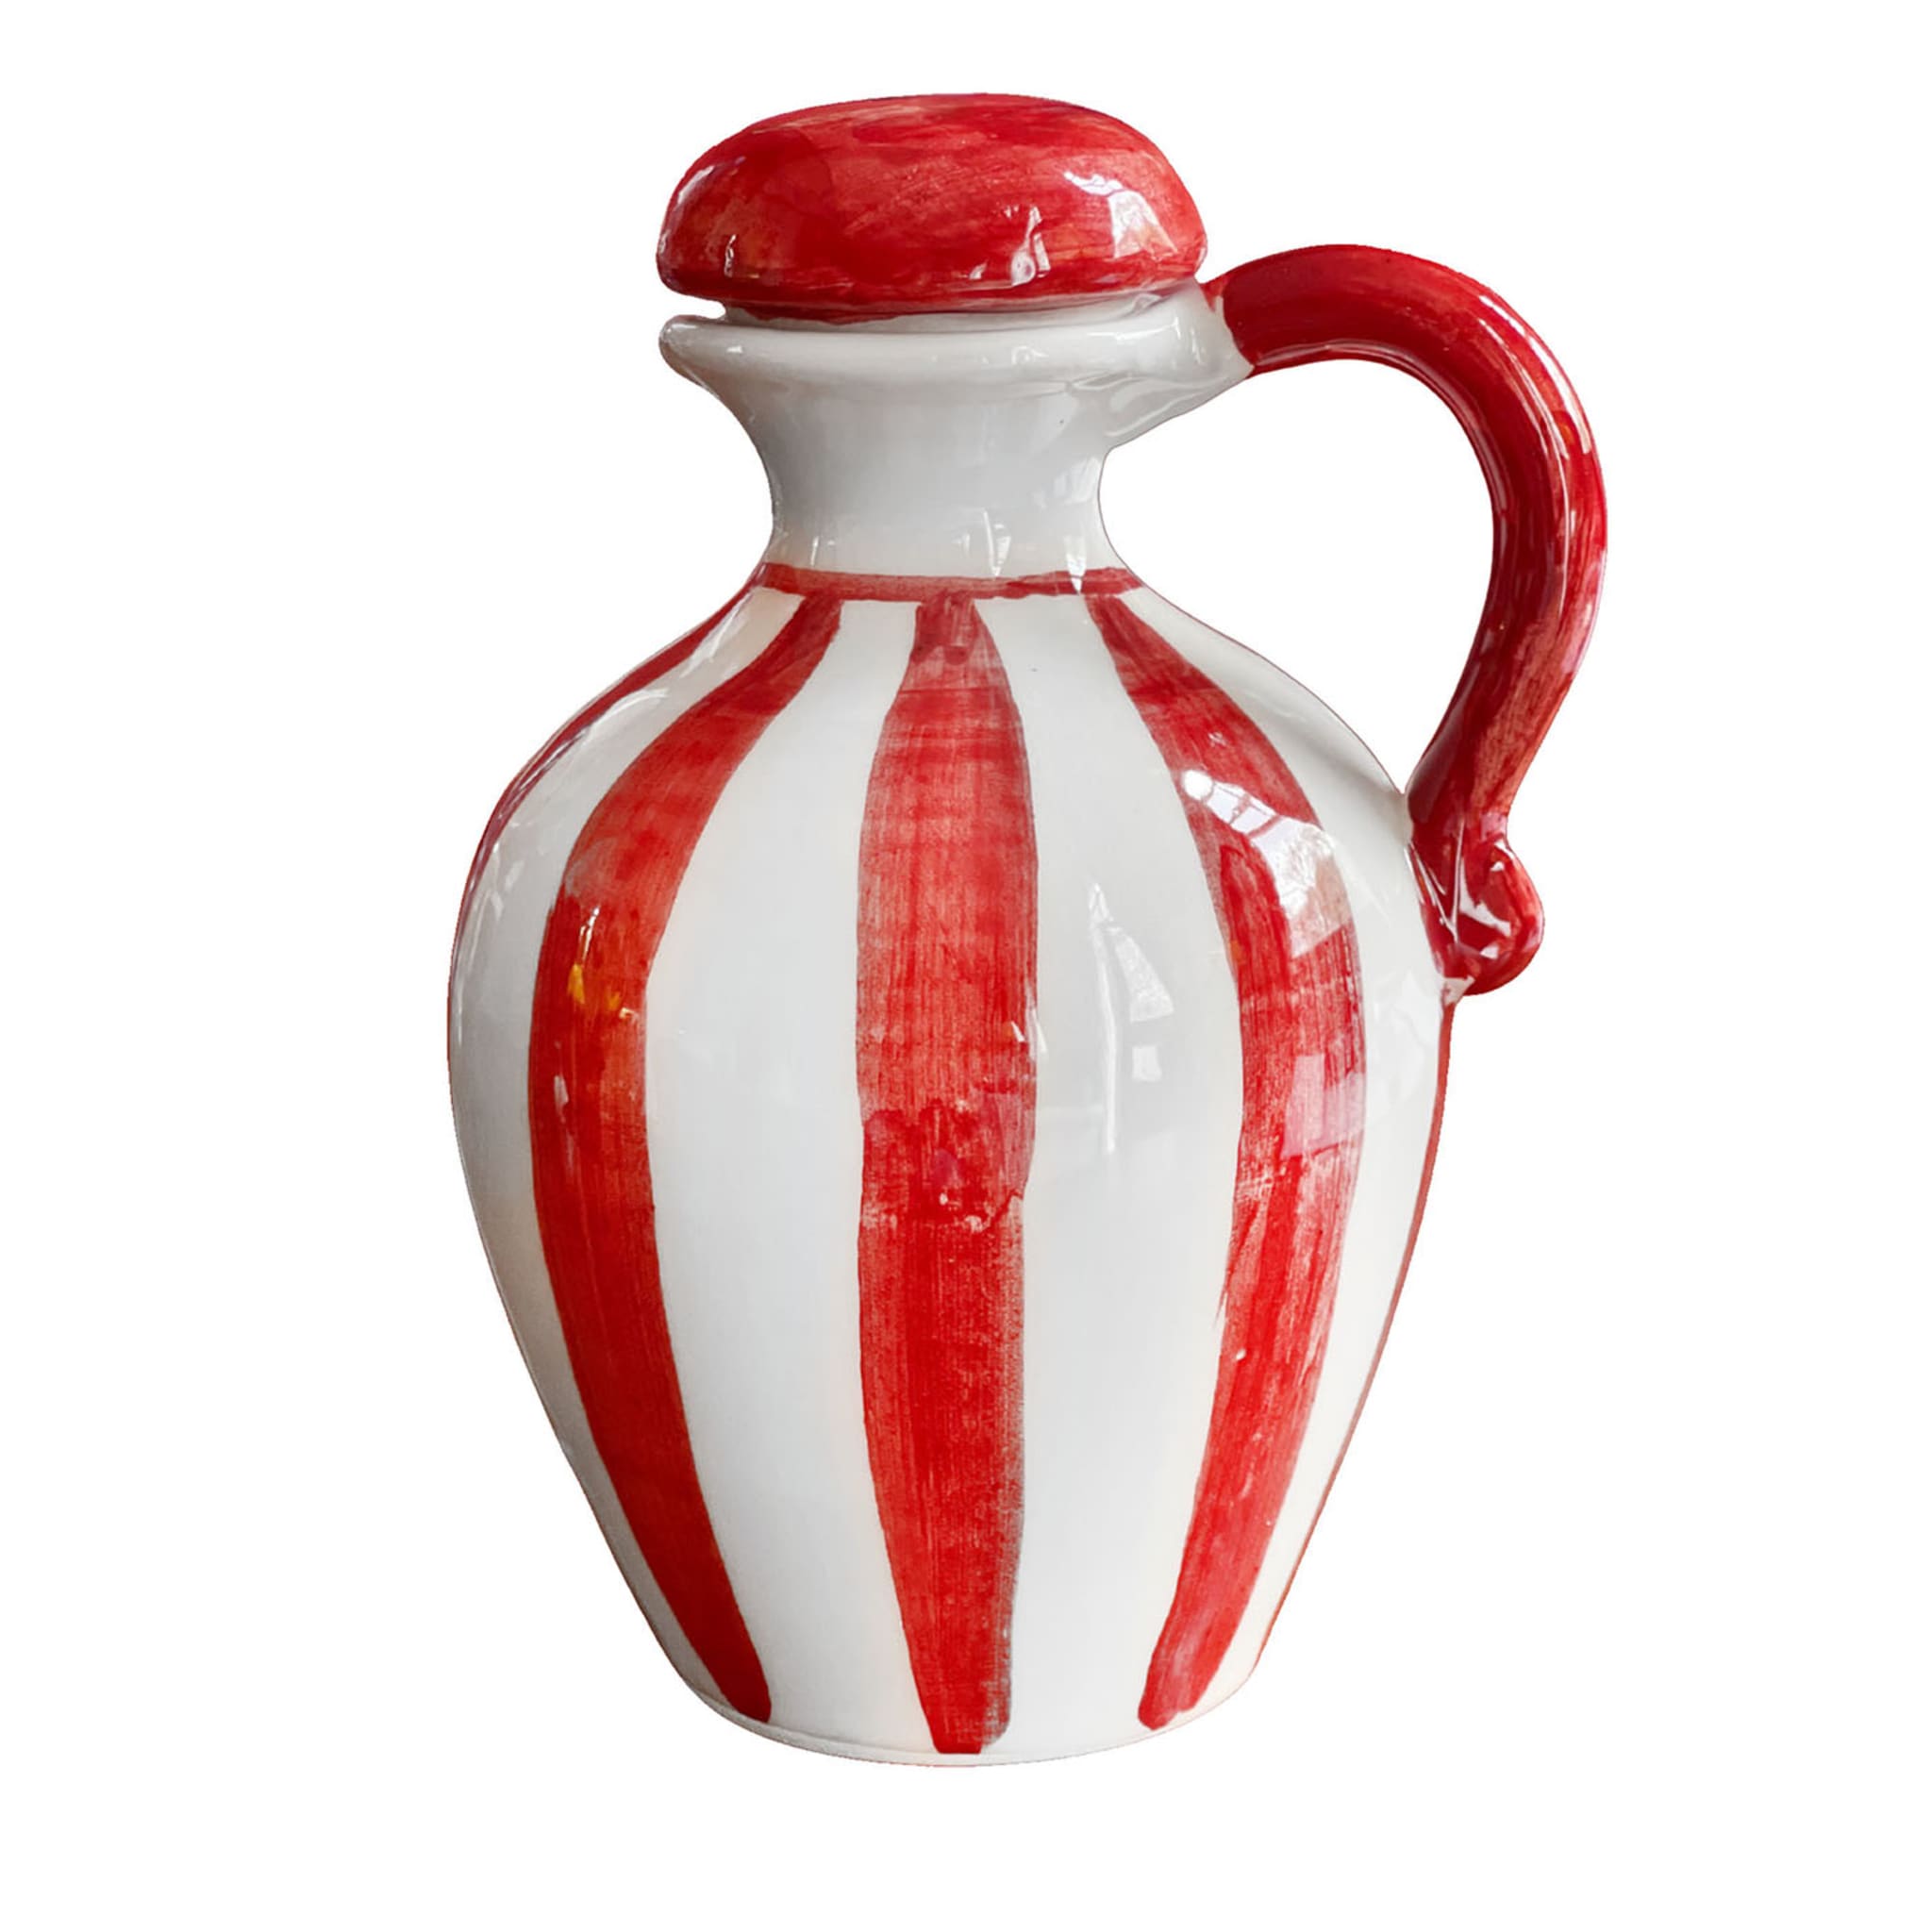 Satz roter Olivenöl- und Essigflaschen aus Keramik  - Hauptansicht